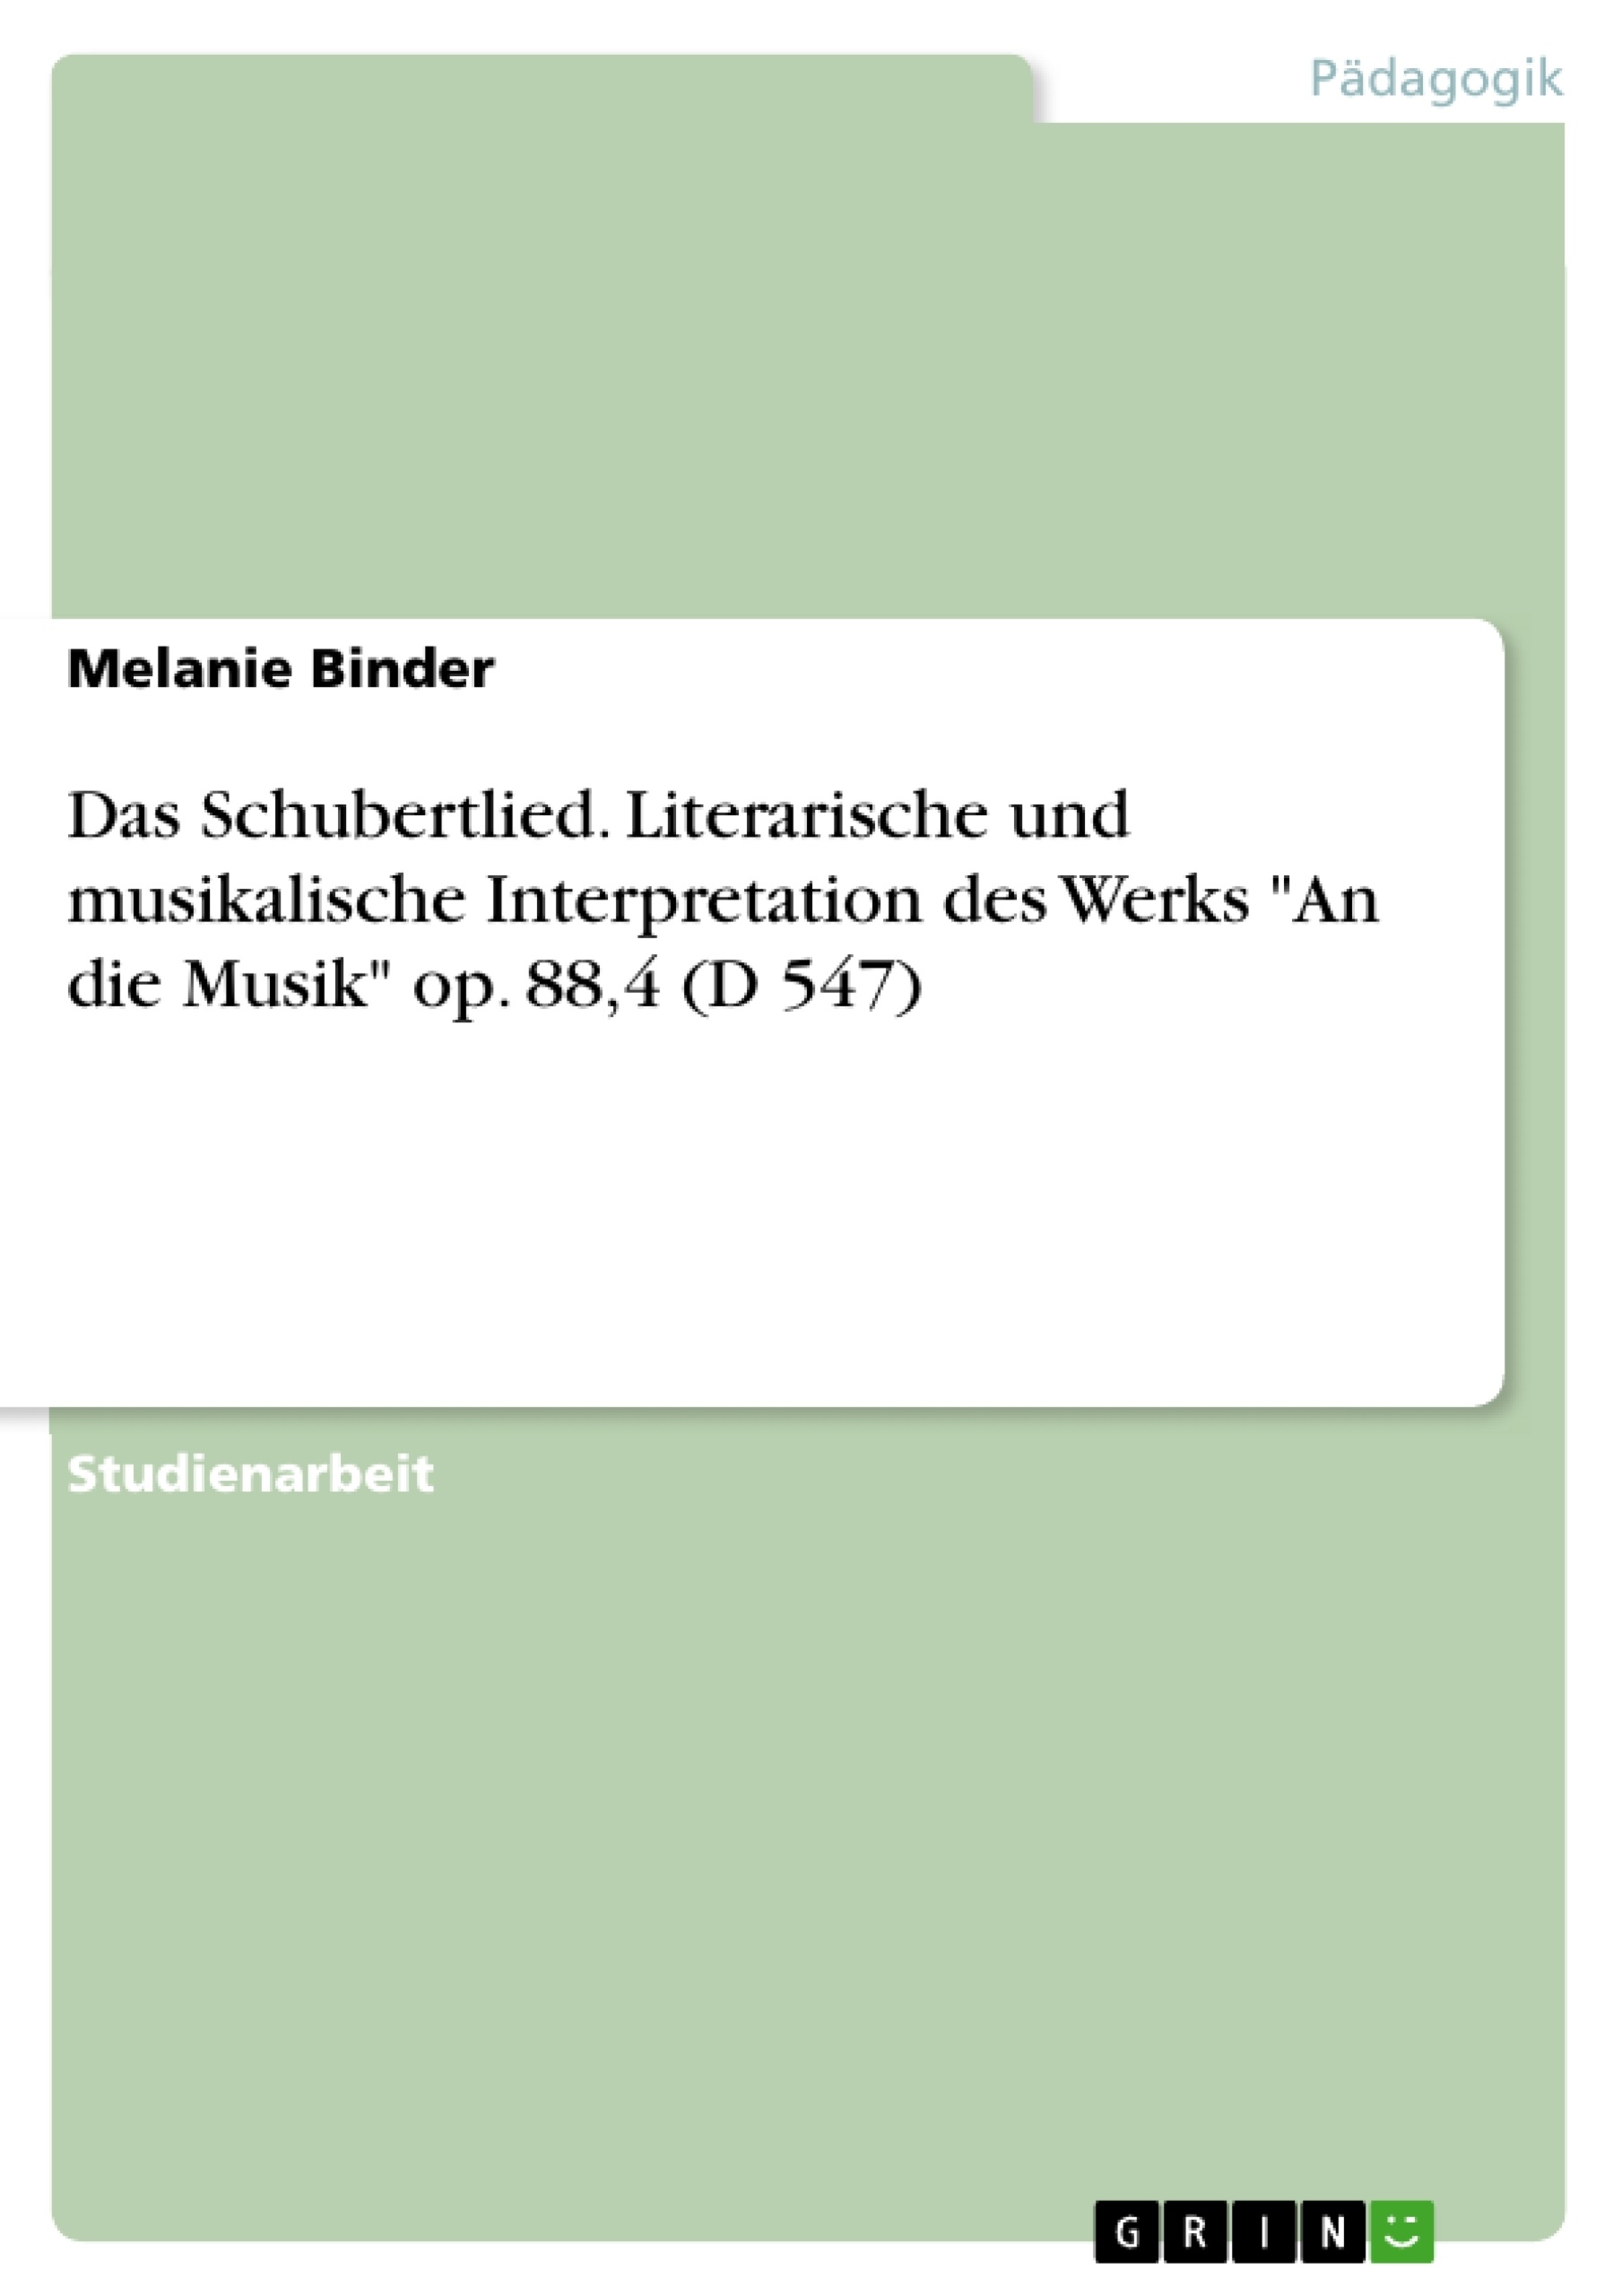 Titre: Das Schubertlied. Literarische und musikalische Interpretation des Werks "An die Musik" op. 88,4 (D 547)